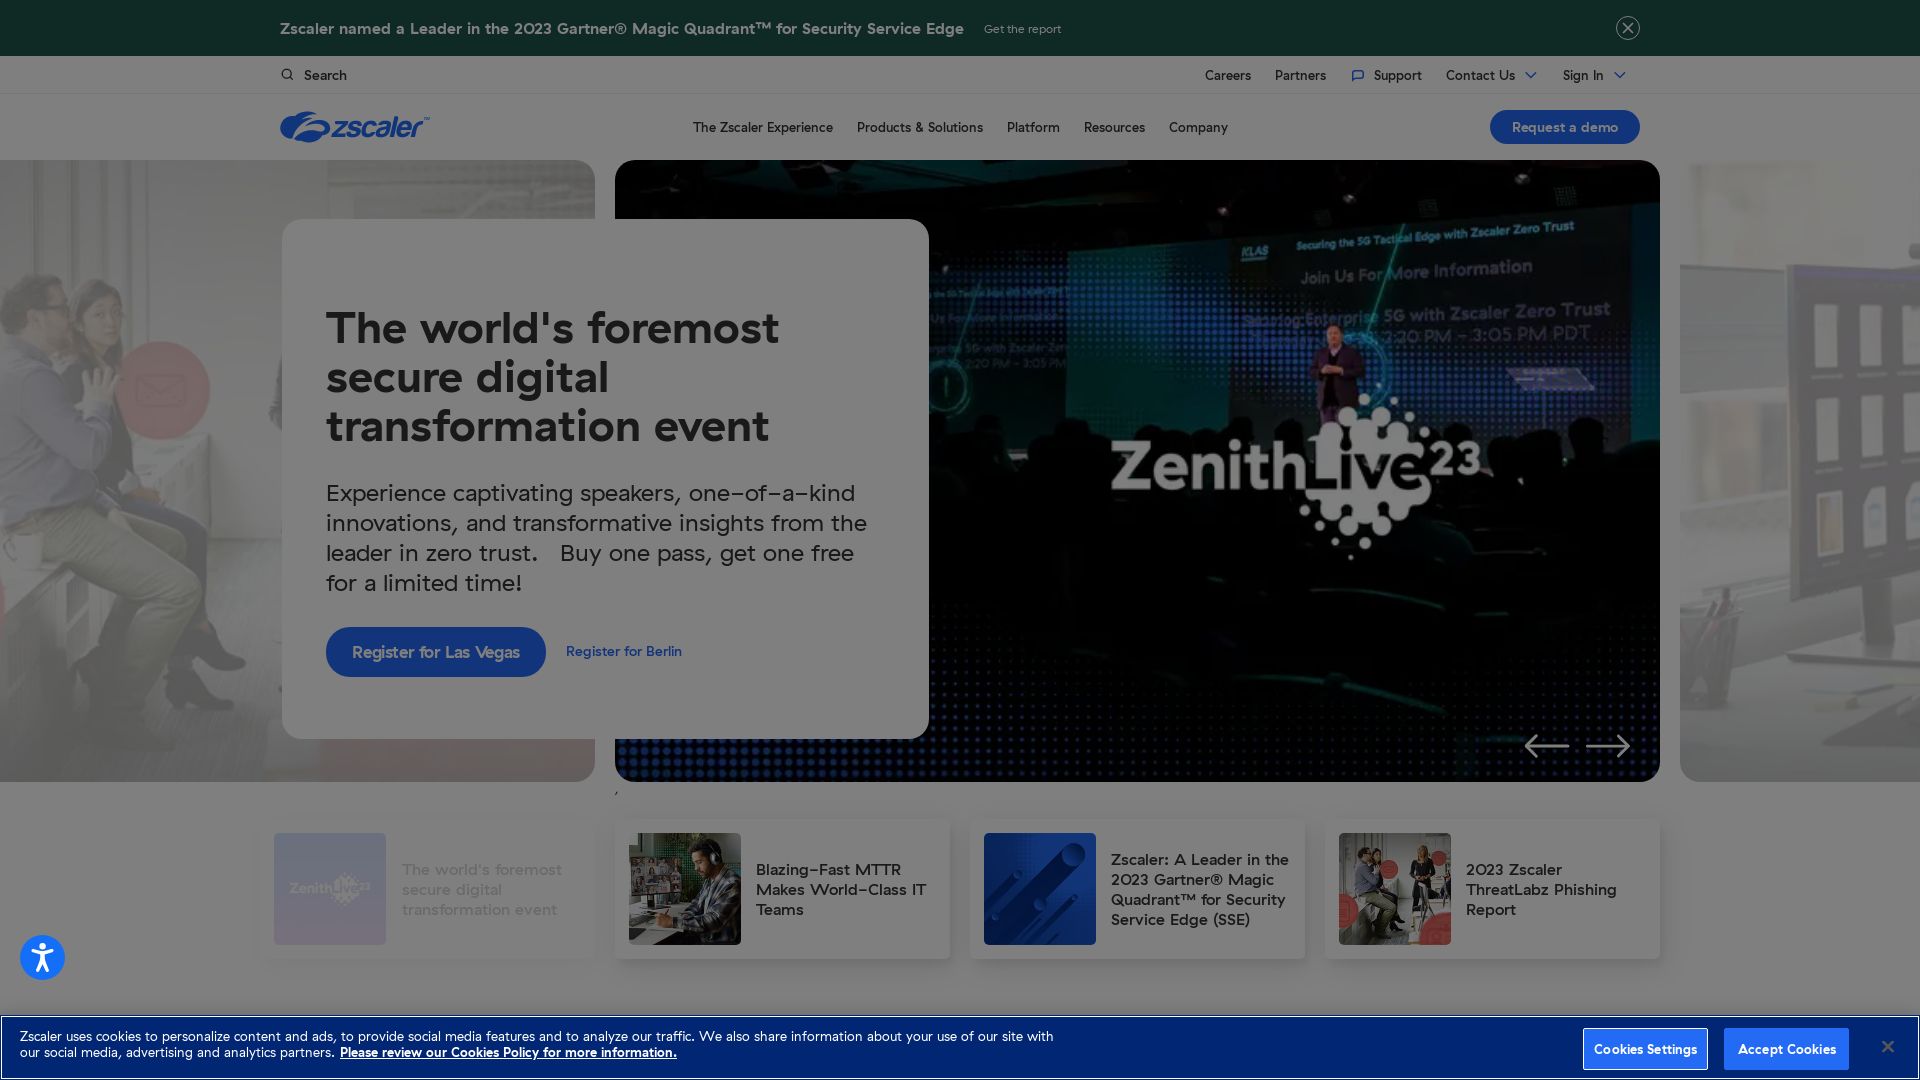 Website status zscaler.com is   ONLINE